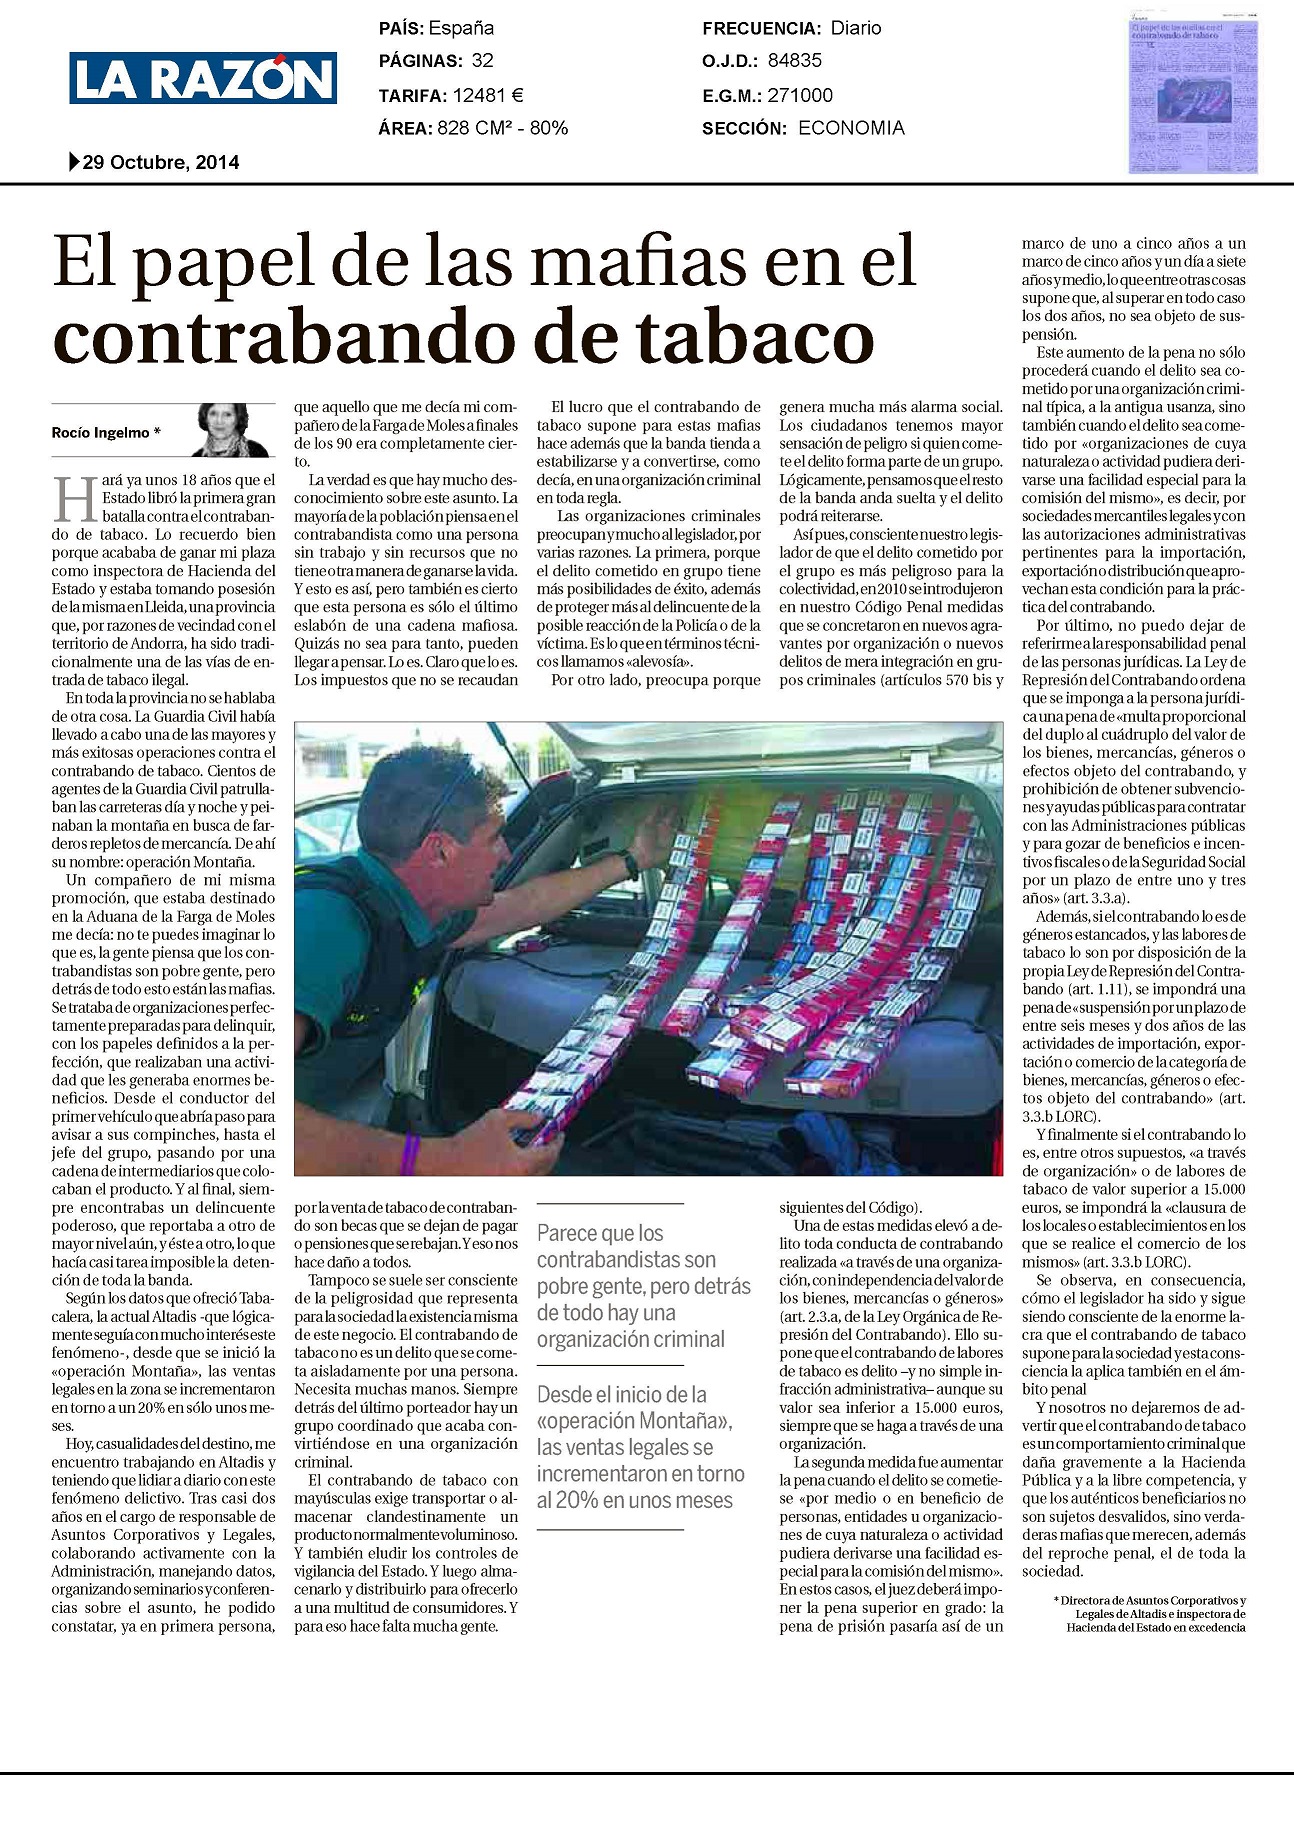 El papel de las mafias en el contrabando de tabaco